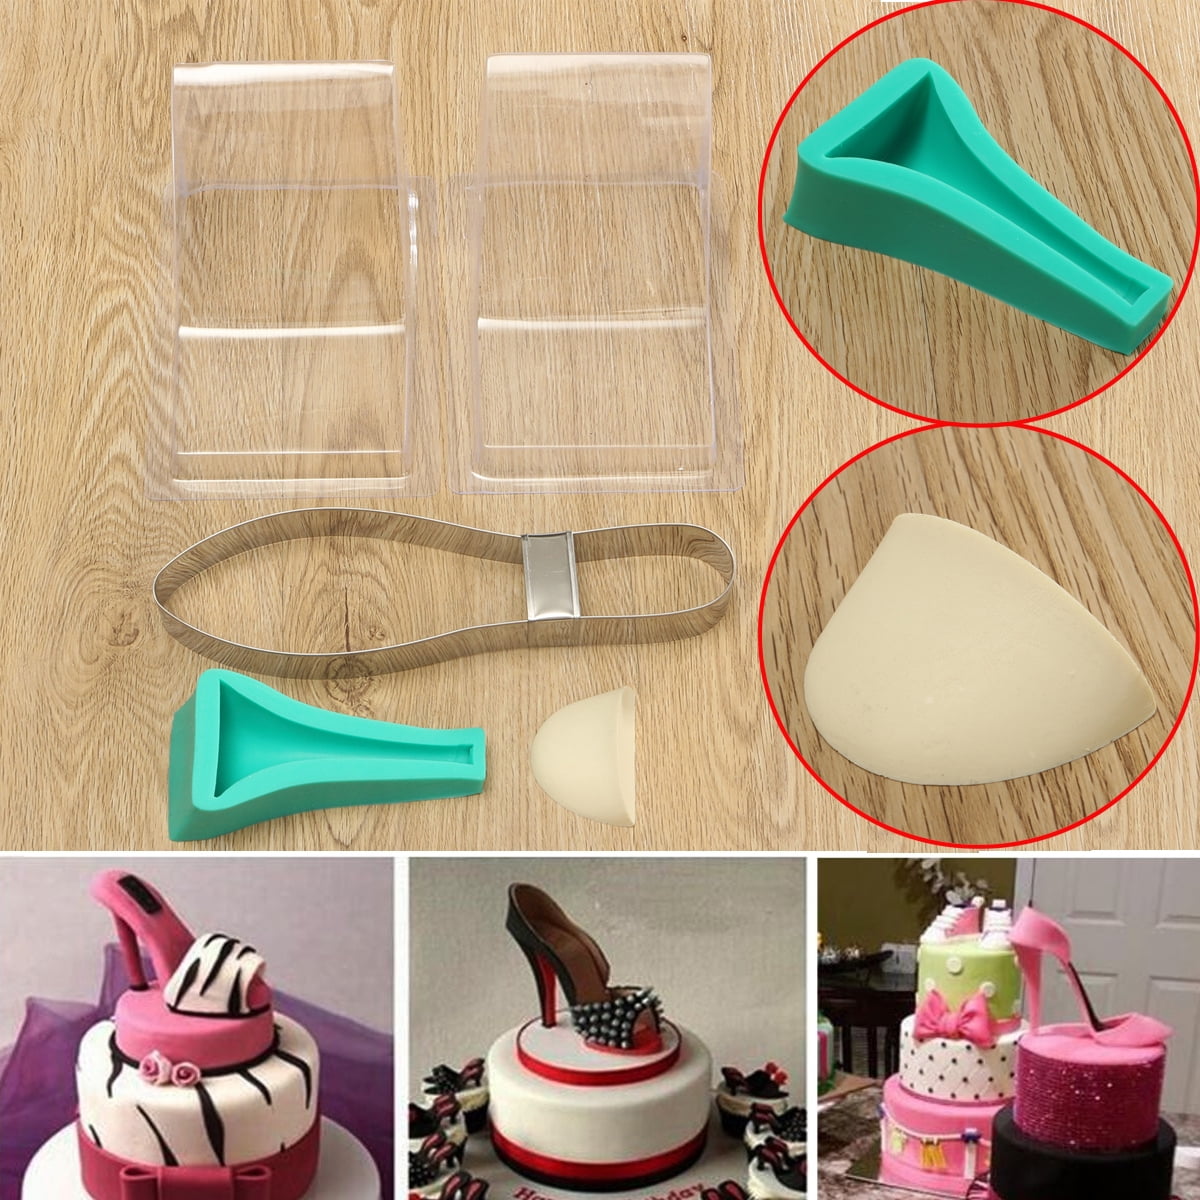 TANGCHU 3D High-heeled Shoes Kit Set Cake Decorating Supplies Chocolate Fondant Candy Mold